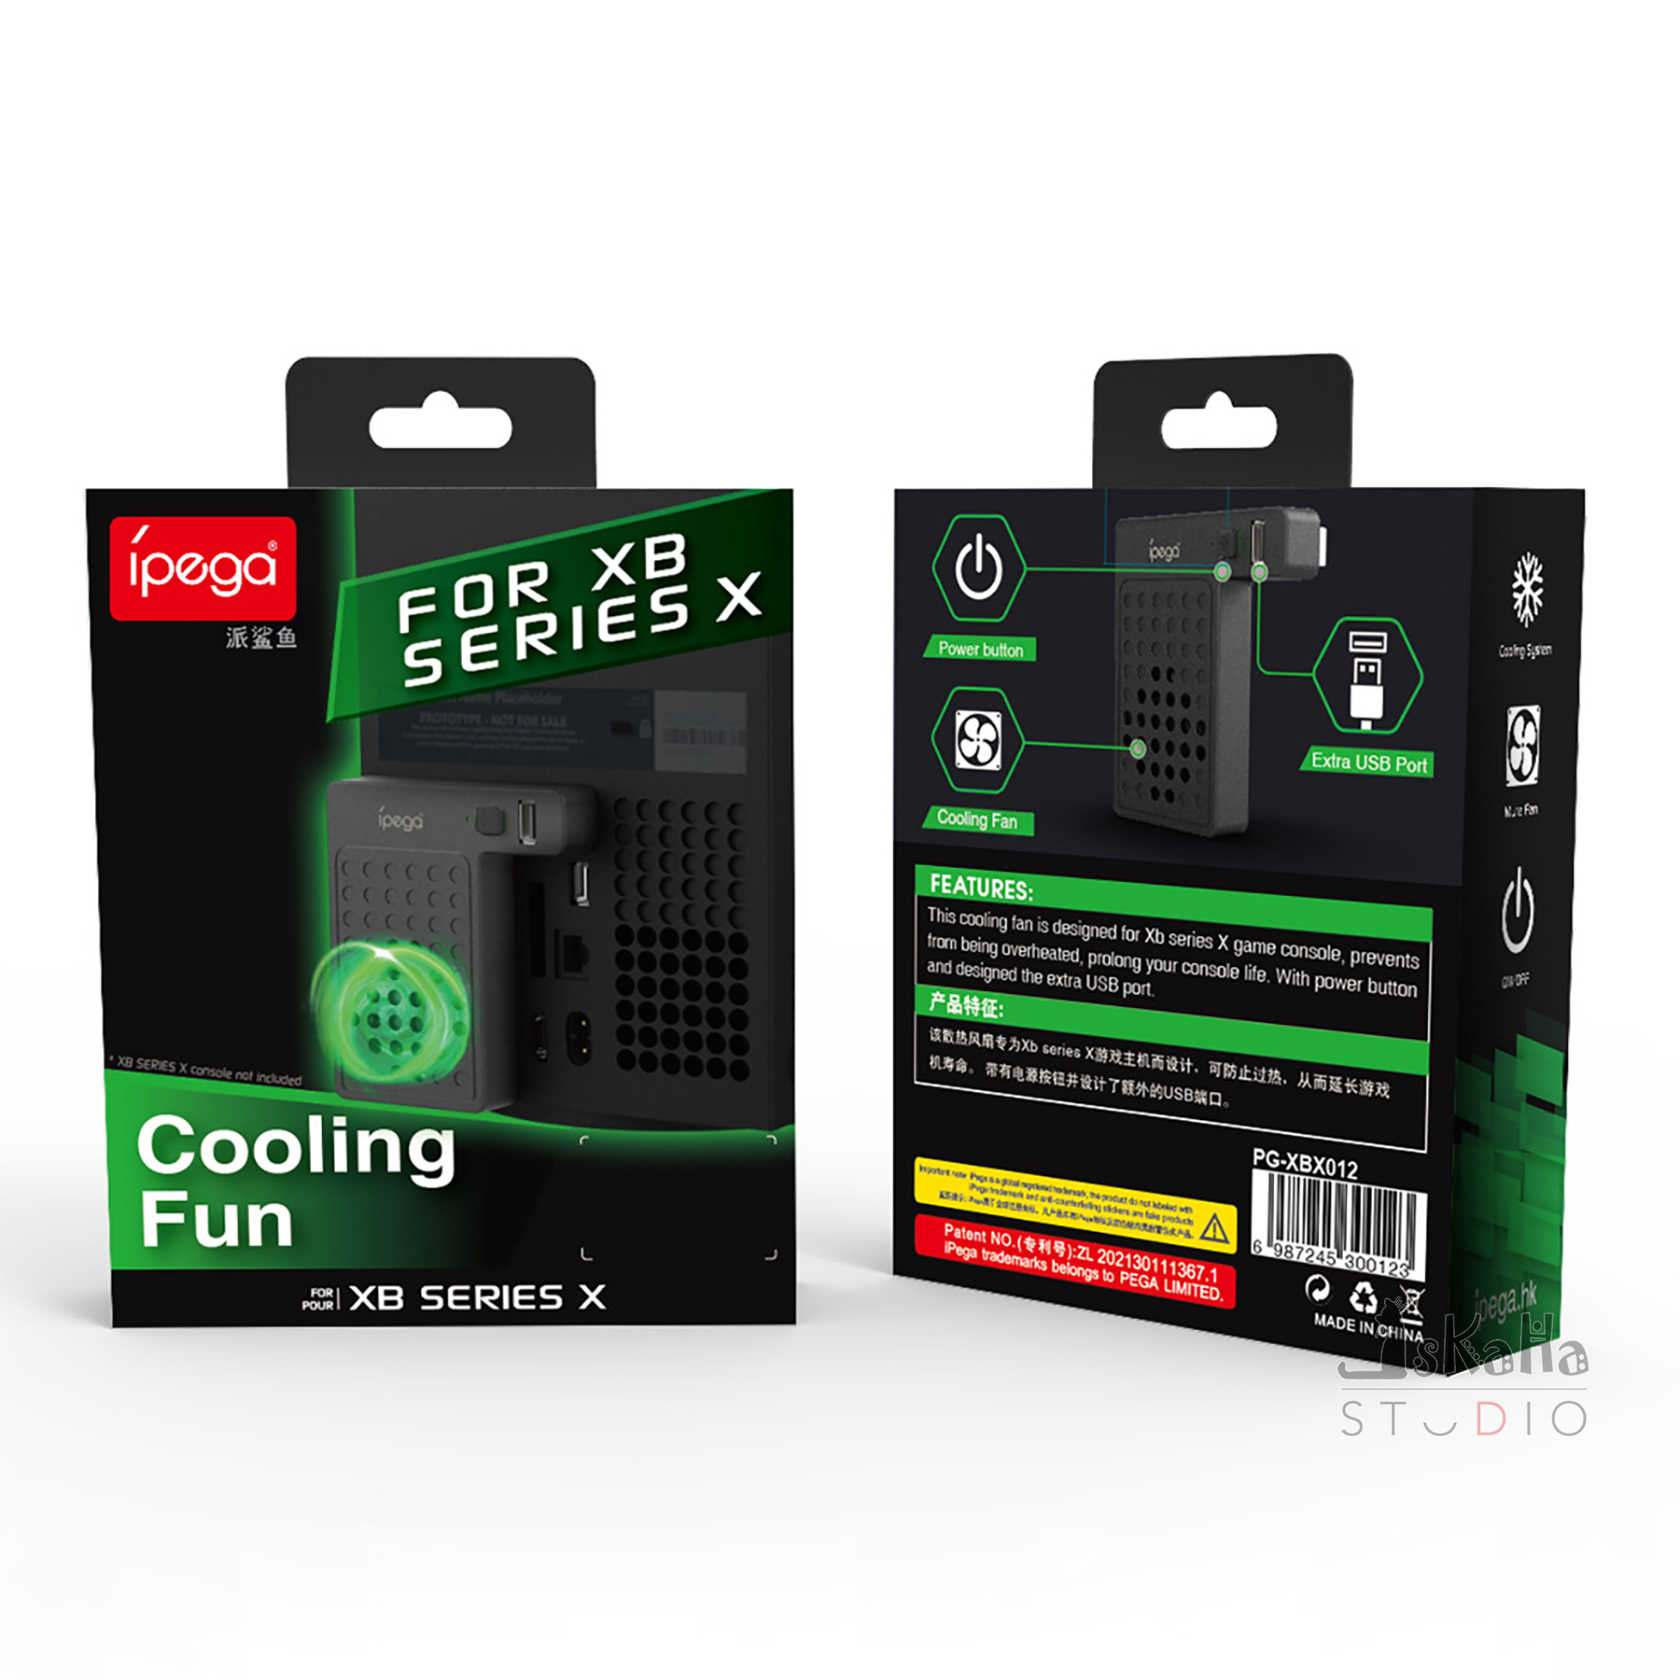 現貨 Xbox Series X 高速散熱風扇 IPEGA 一鍵開關 冷卻風扇 有效降溫 主機散熱風扇 冷卻 散熱